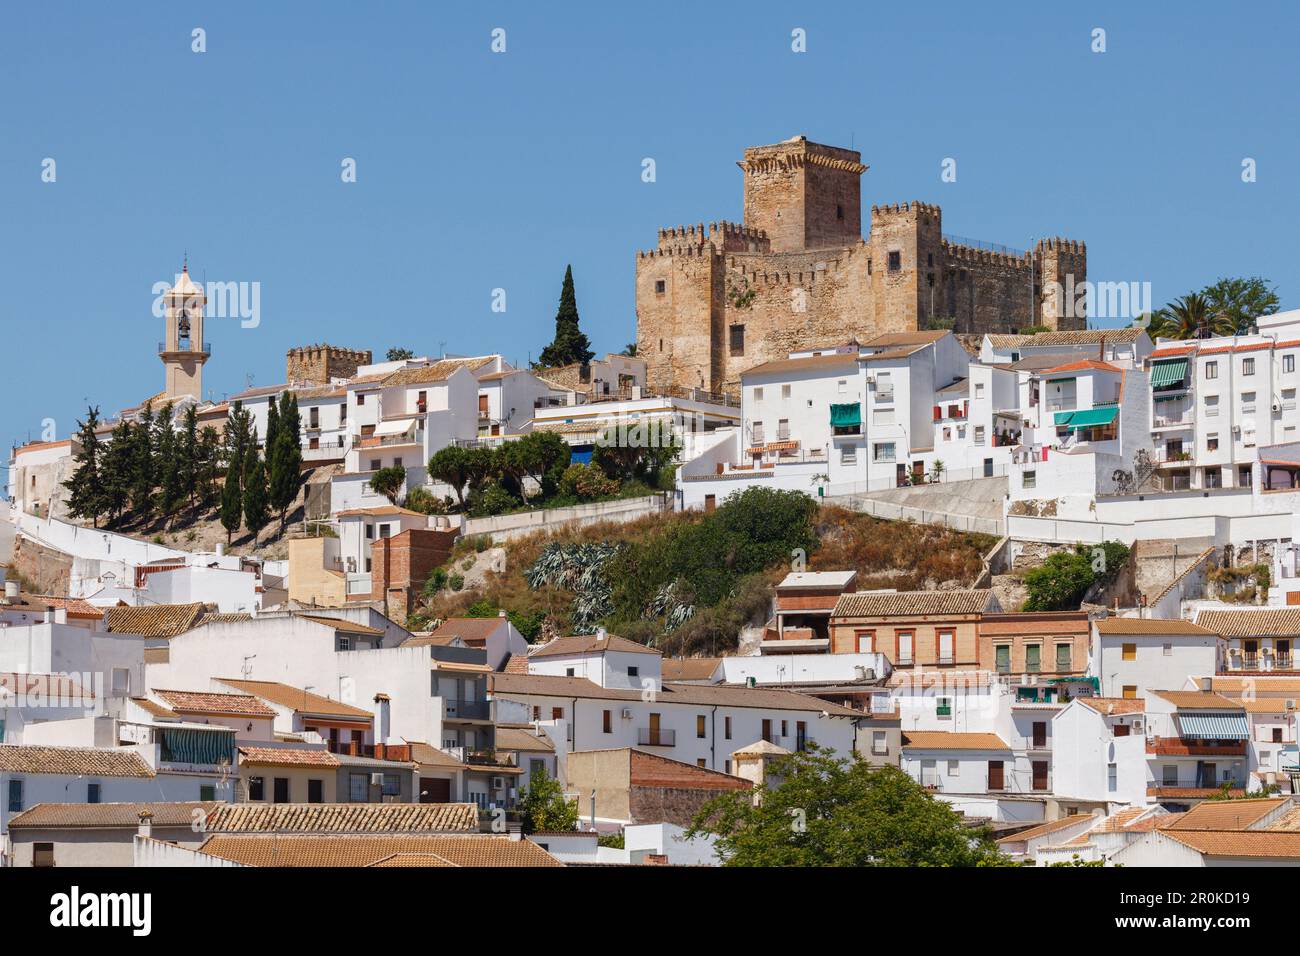 Castillo, castle, Pueblo Blanco, white village, Espejo, Cordoba province, Andalucia, Spain, Europe Stock Photo